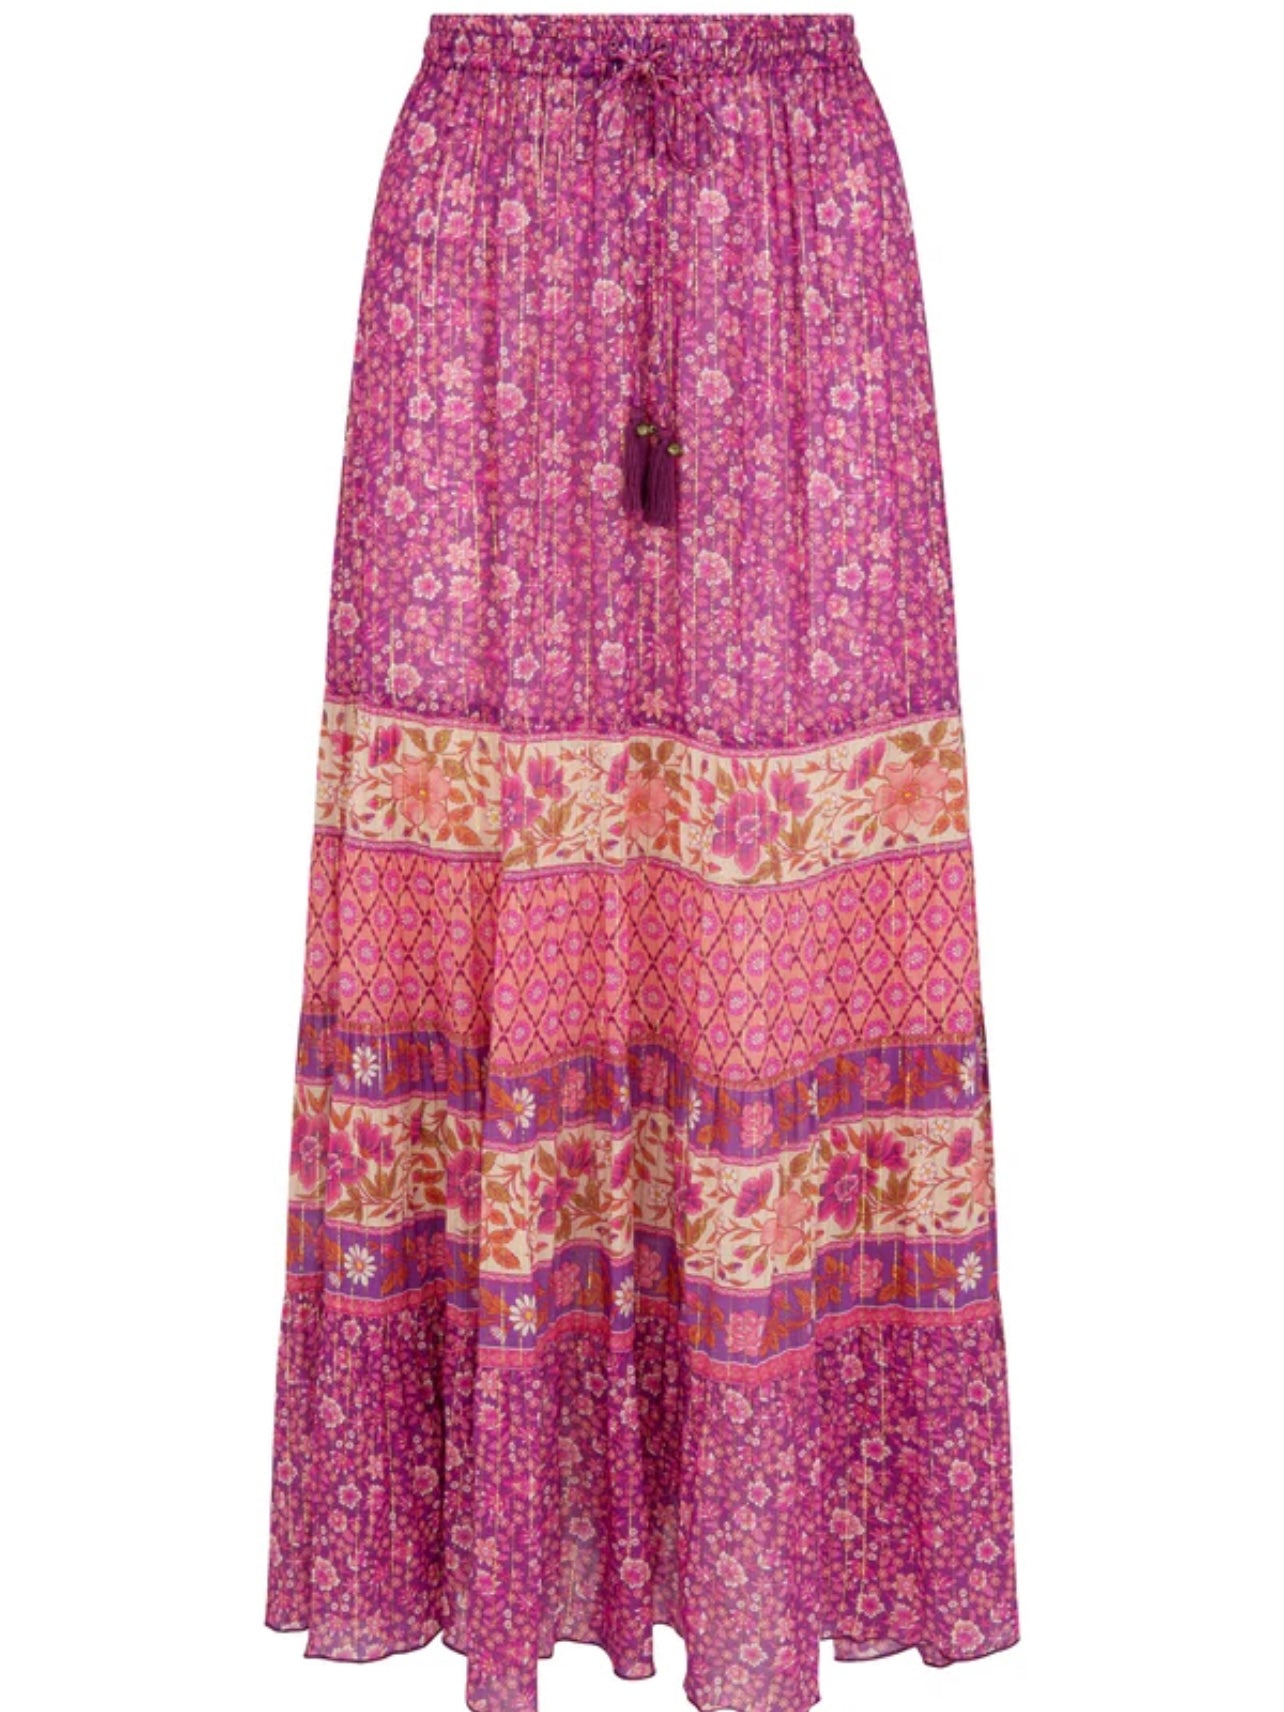 SPELL Sienna Maxi Skirt in Fuchsia